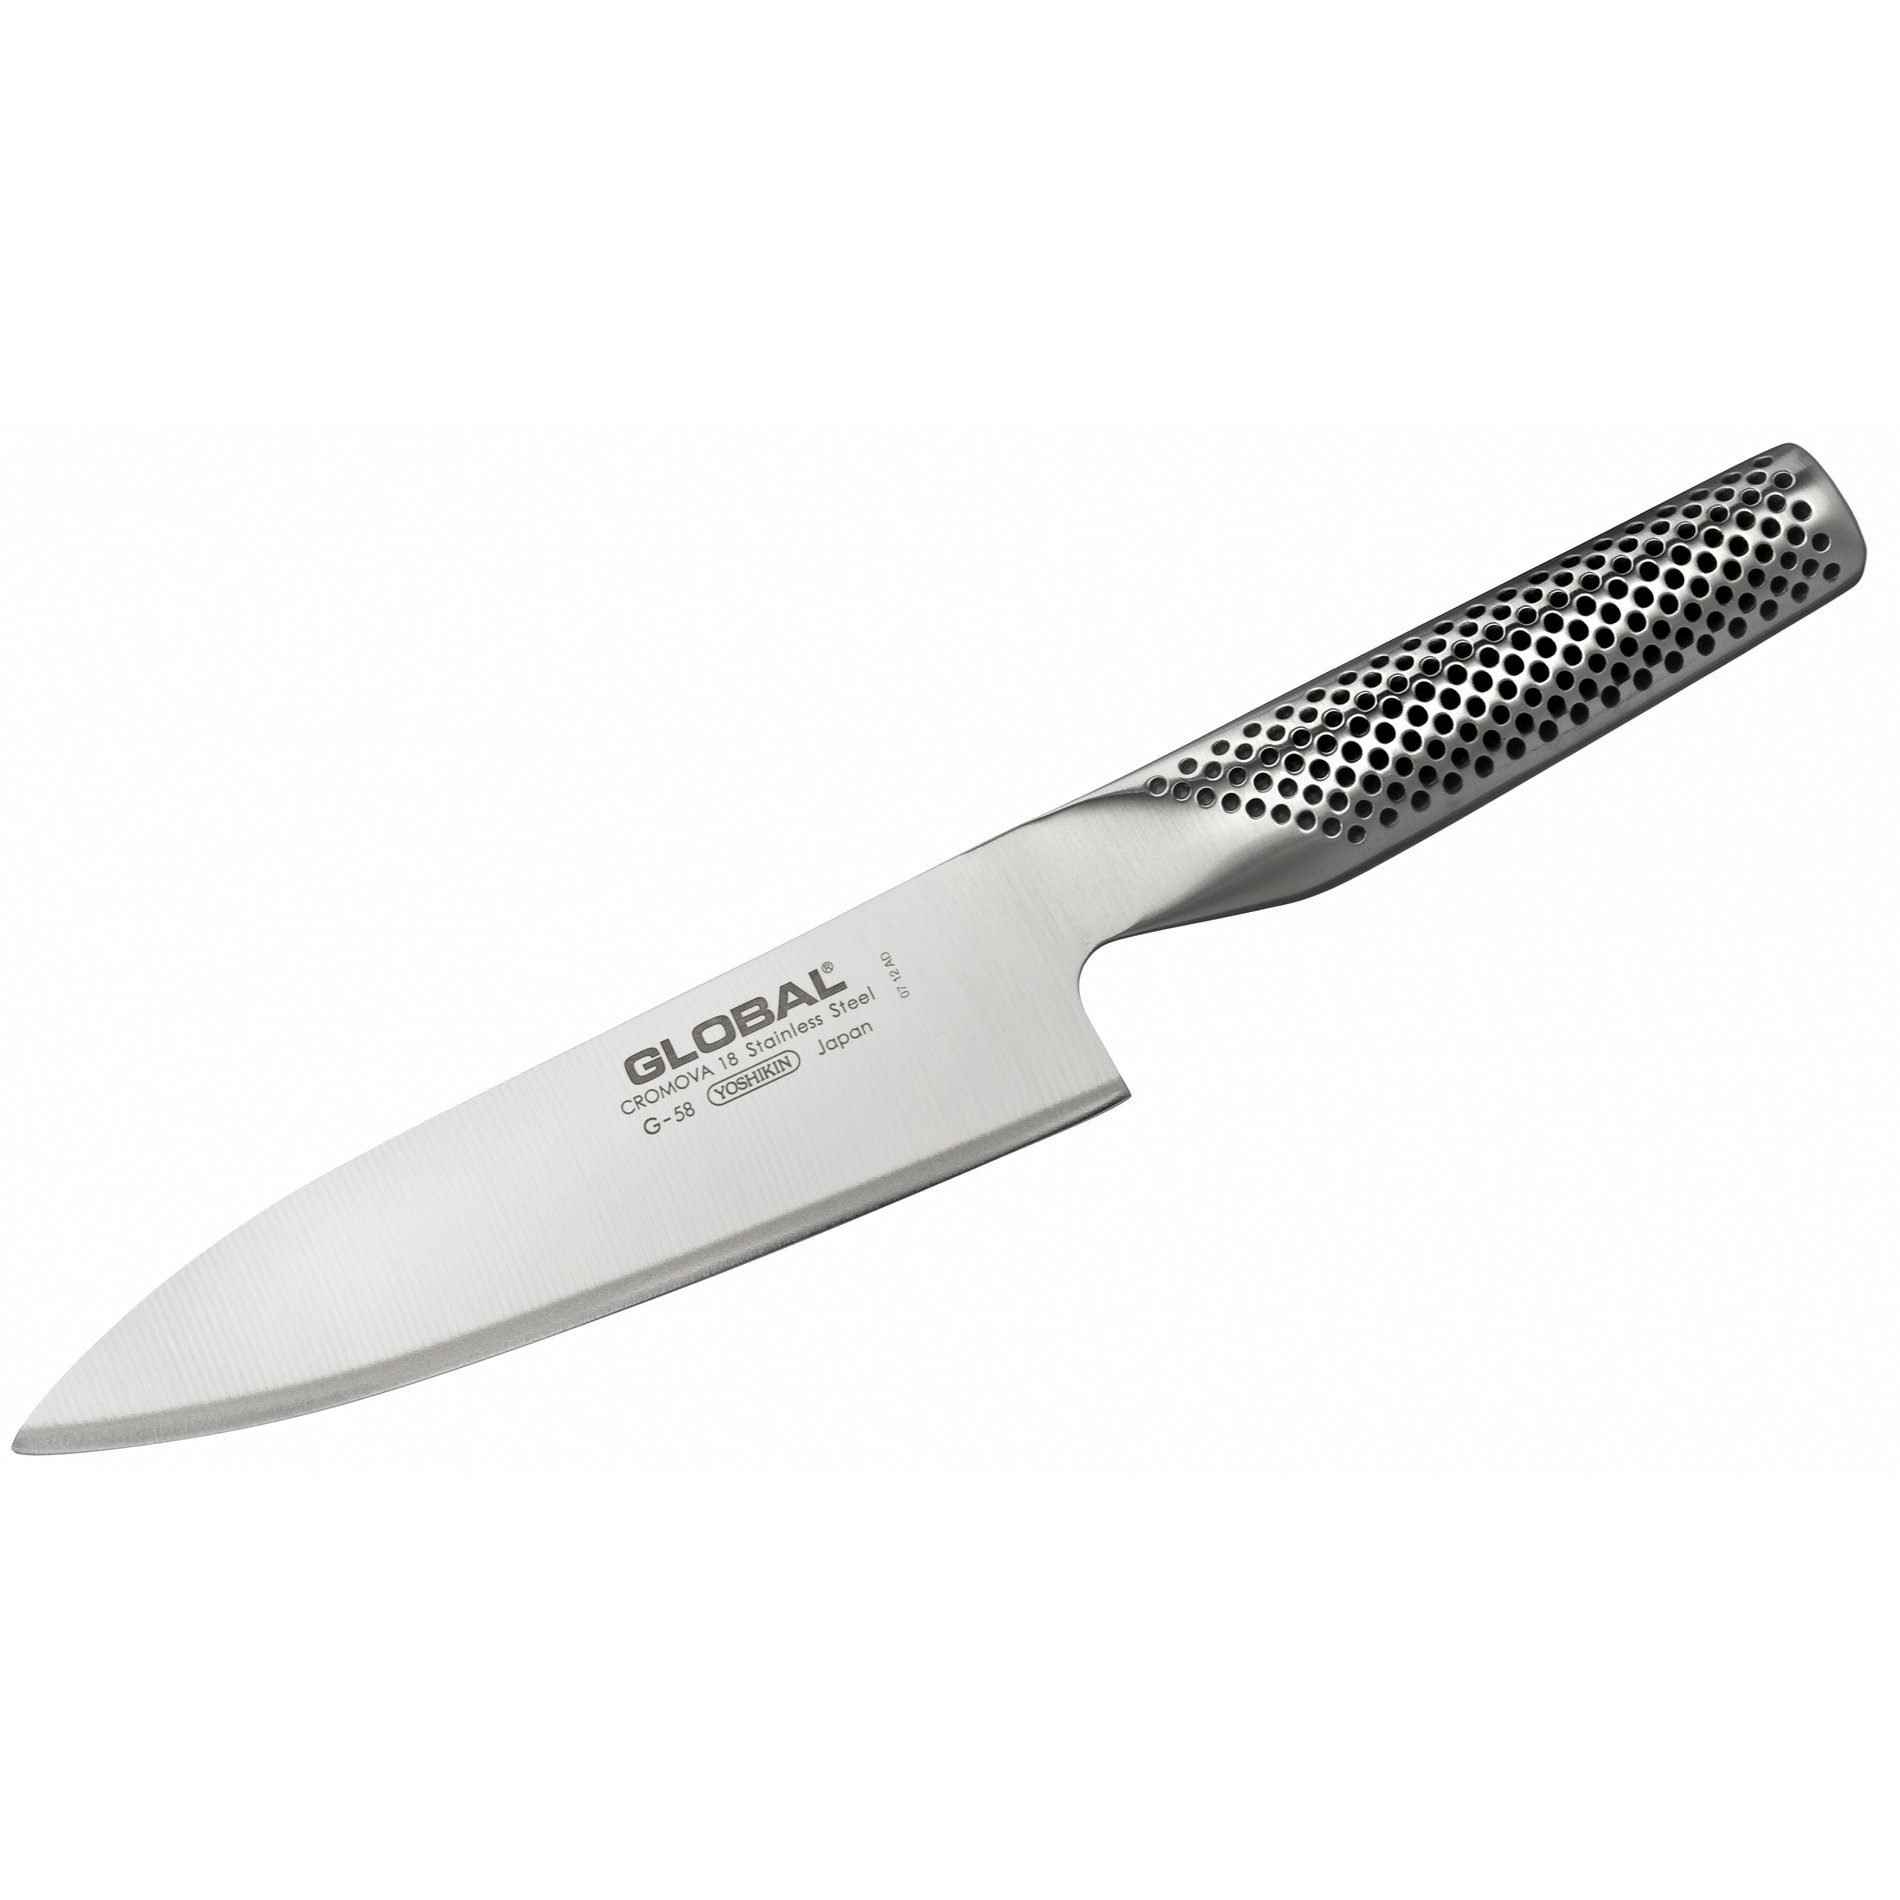 Kuchařský nůž z nerezové oceli GLOBAL SÉRIE G 16 cm